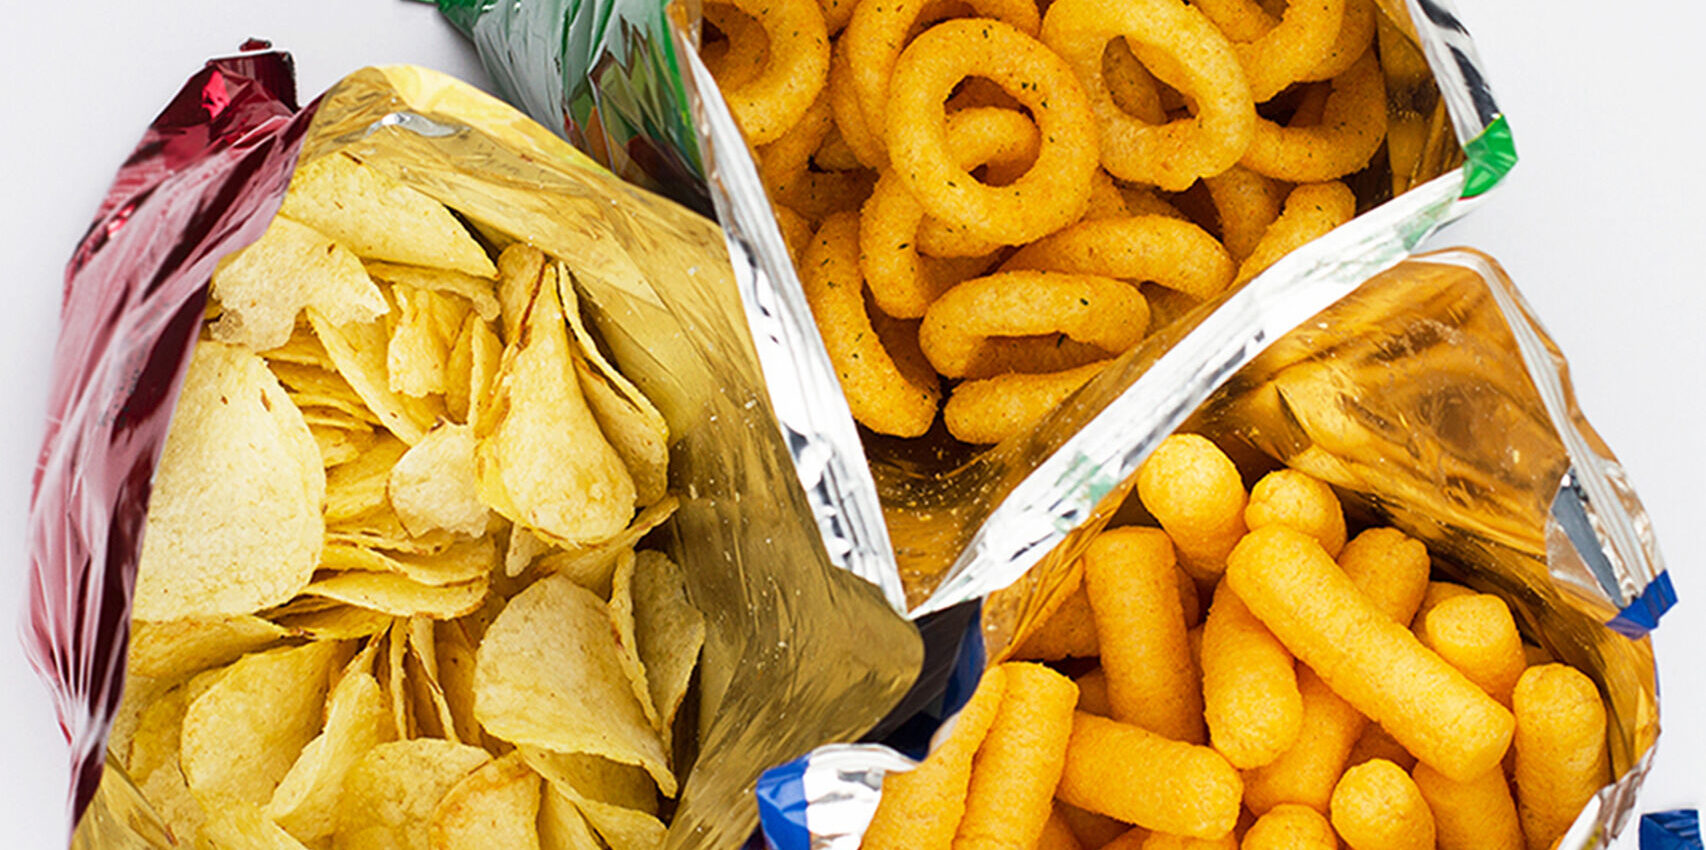 Los snacks más consumidos en Colombia